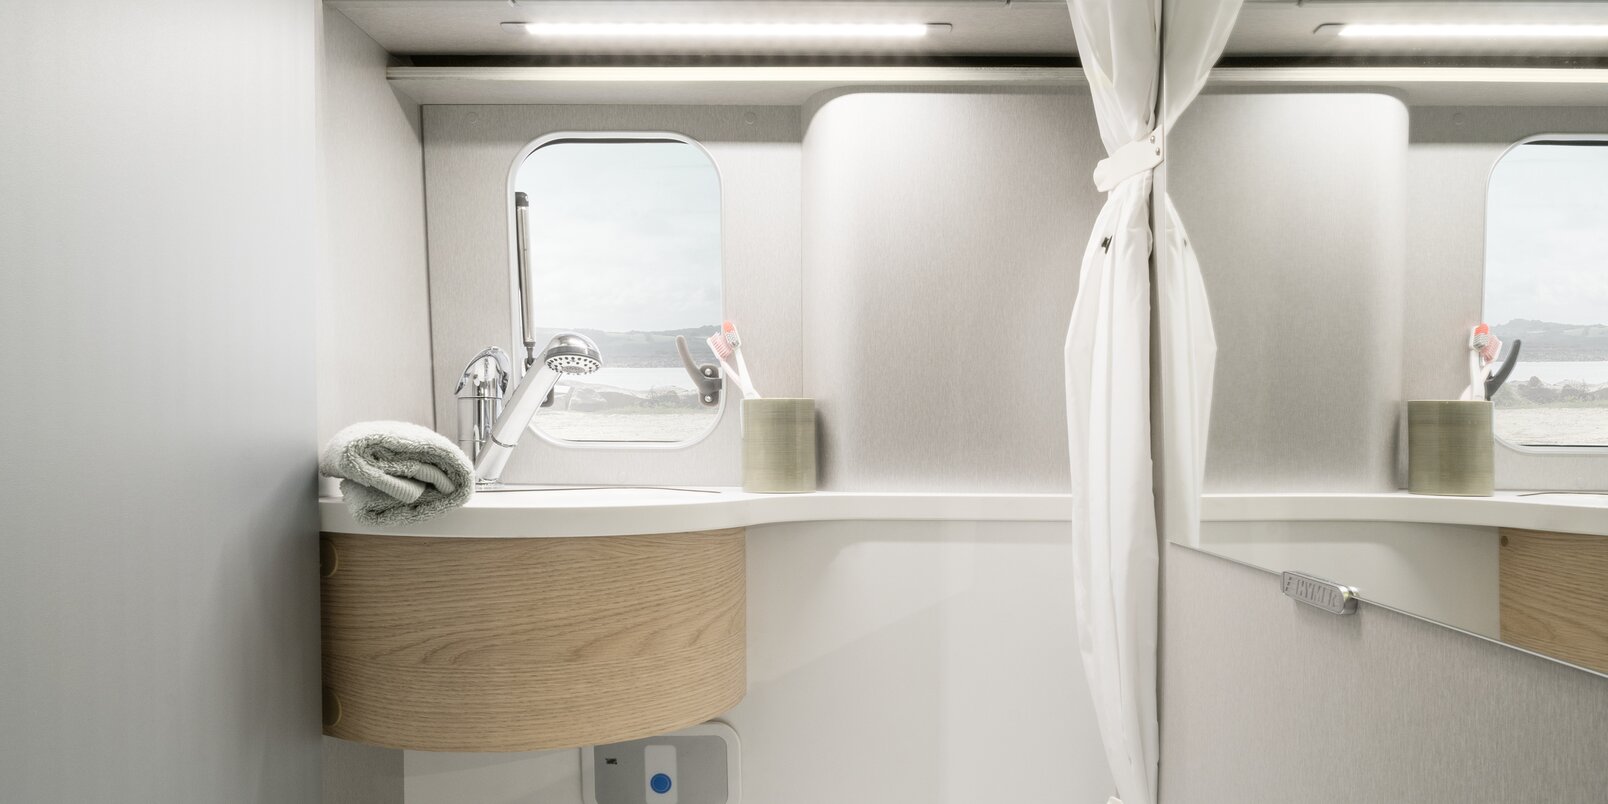 Toilette, Waschbecken, Spiegelschrank, Duschvorhang, Ablagefach und Fenster im Kompaktbad beim HYMER Free